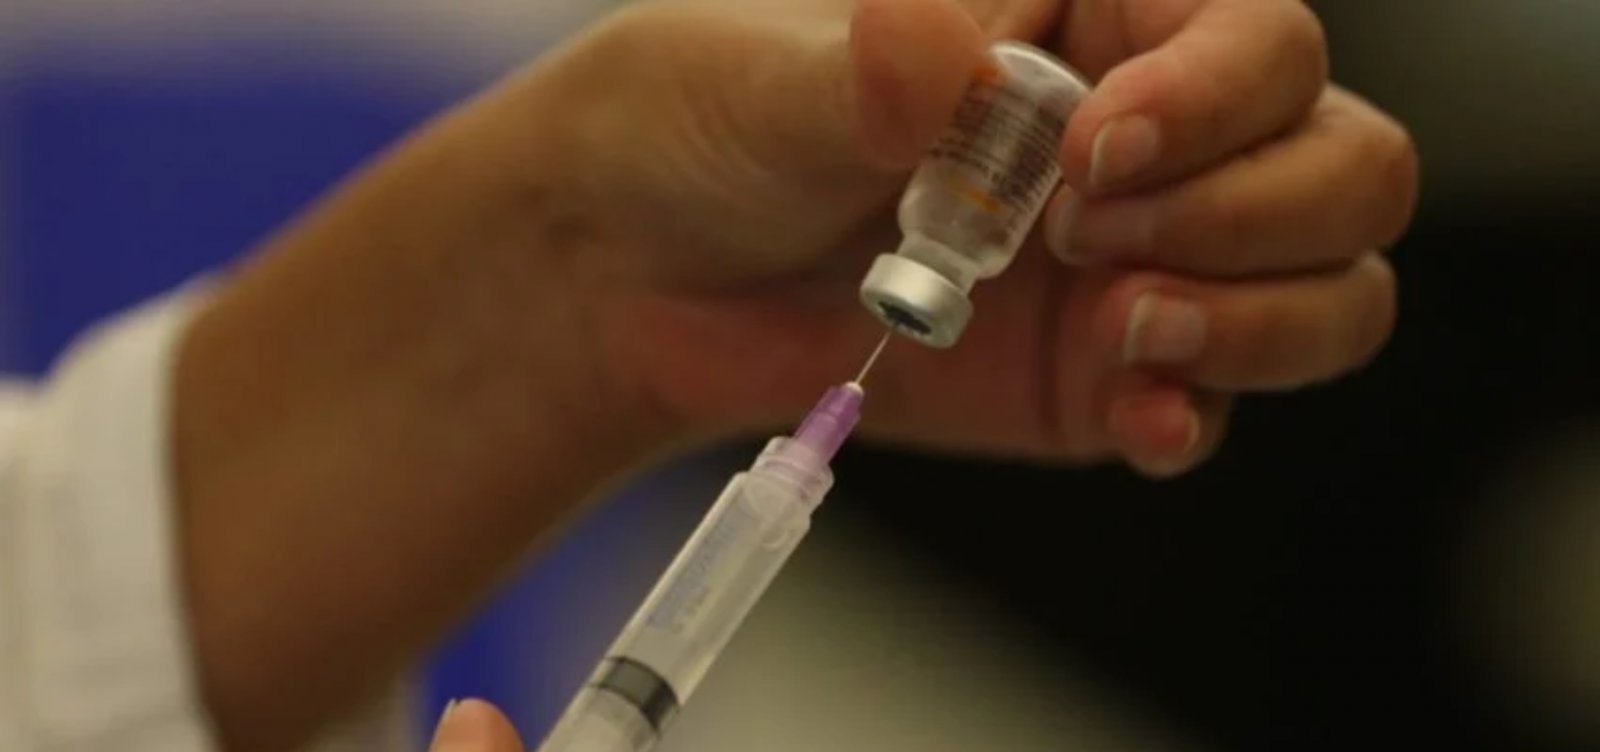 Farmacêutica Takeda vai desenvolver vacina capaz de retardar o avanço do Alzheimer